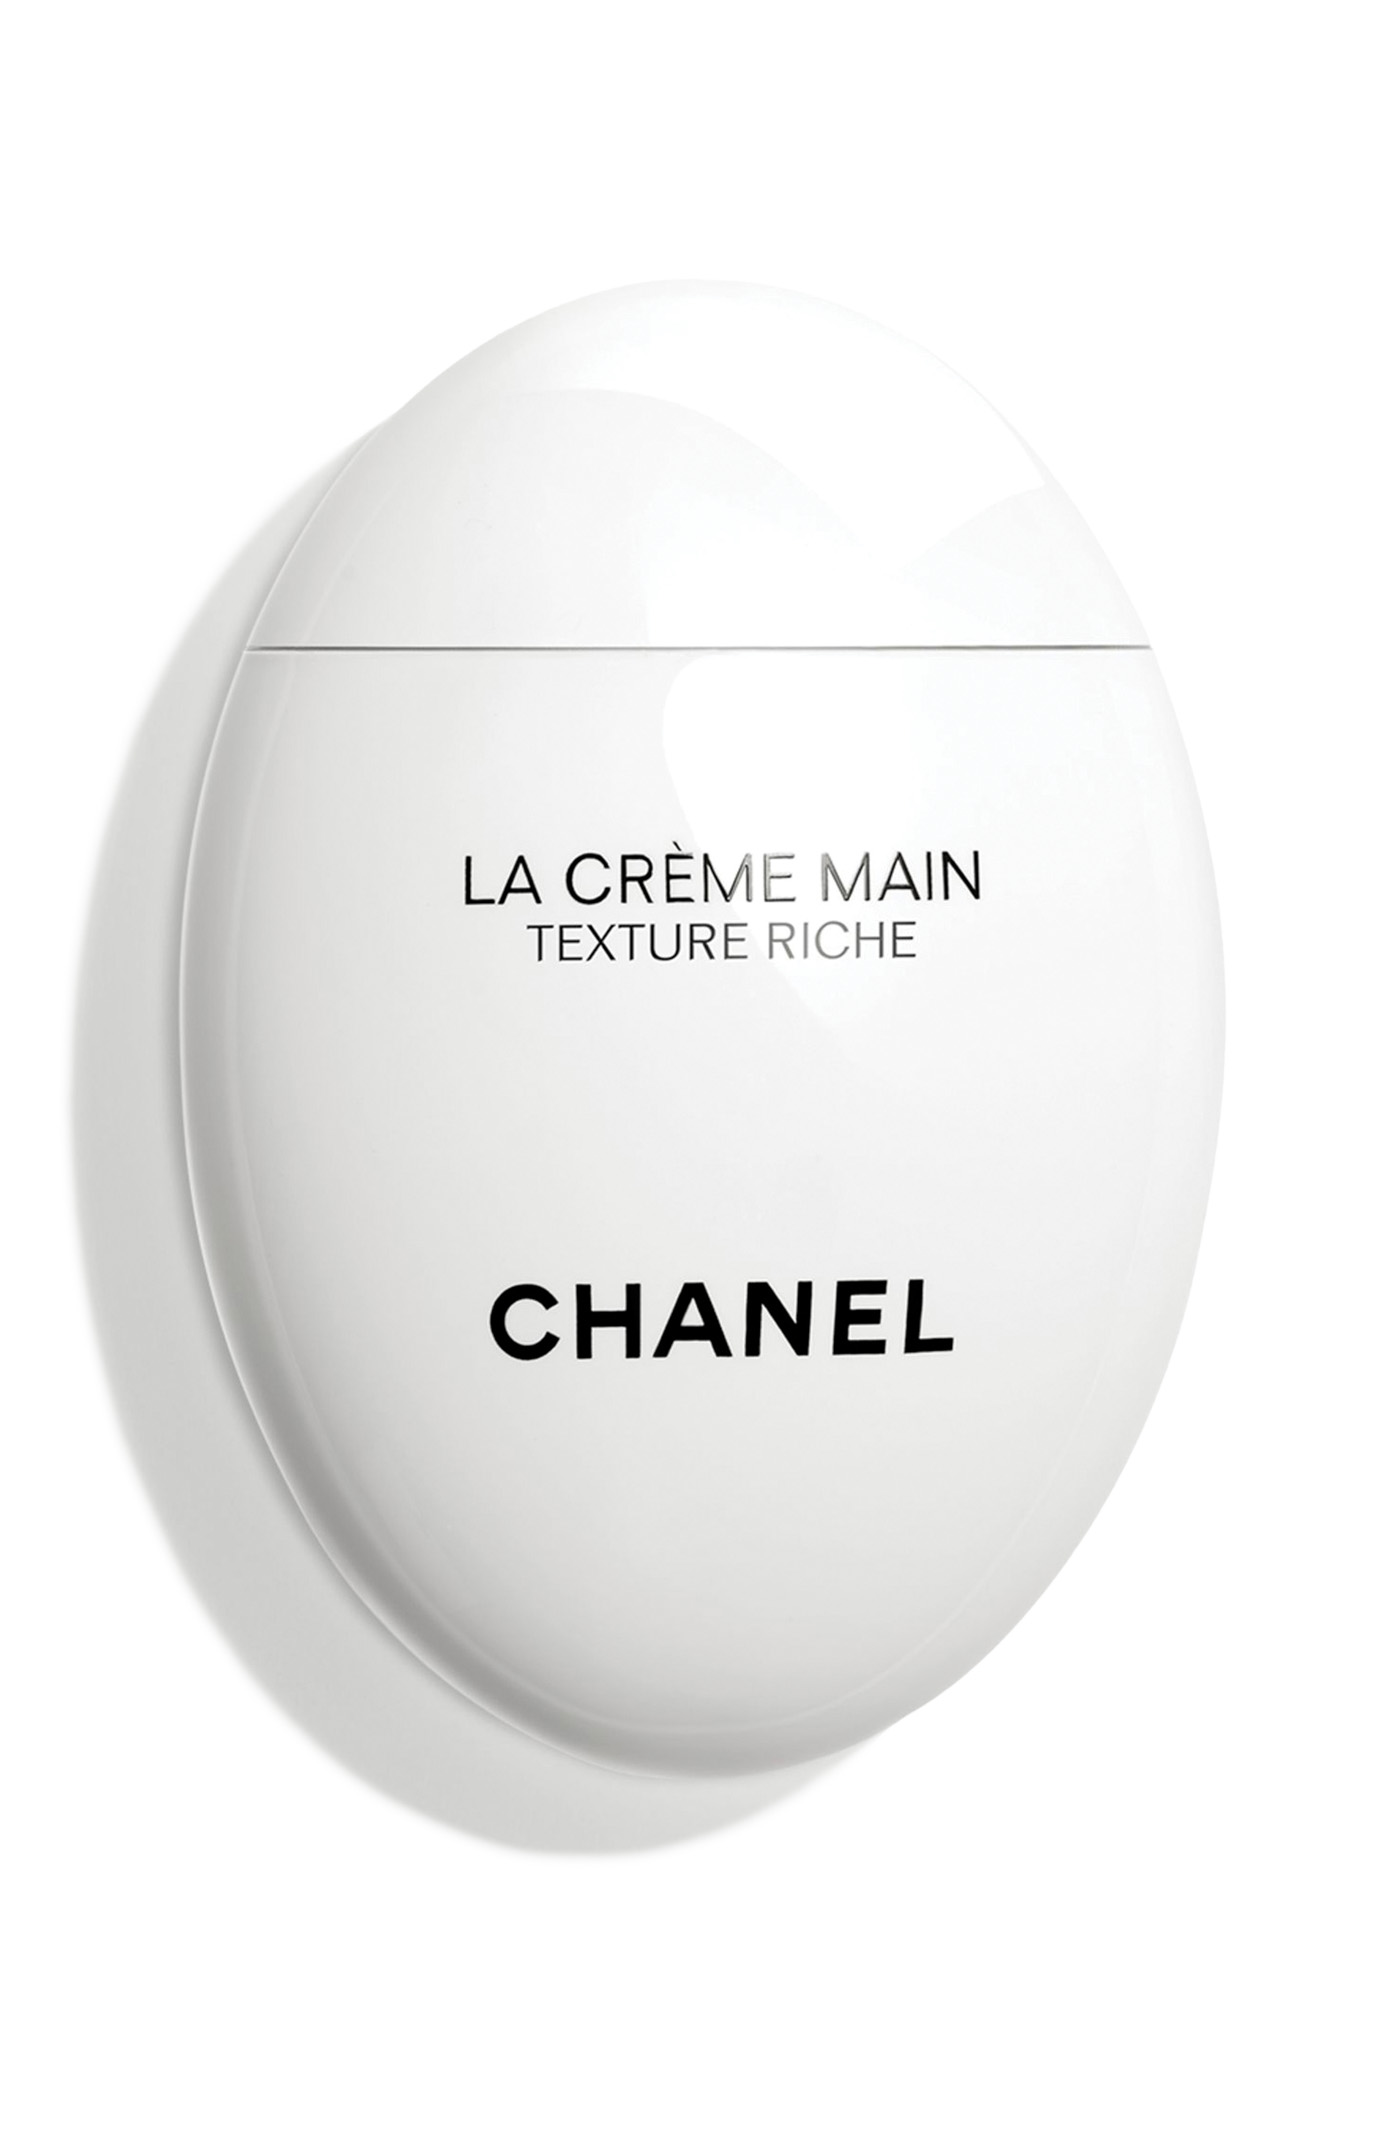 26 Chanel Beauty, La Crème Main Texture Riche Hand & Nail Cream, Nordstrom.com